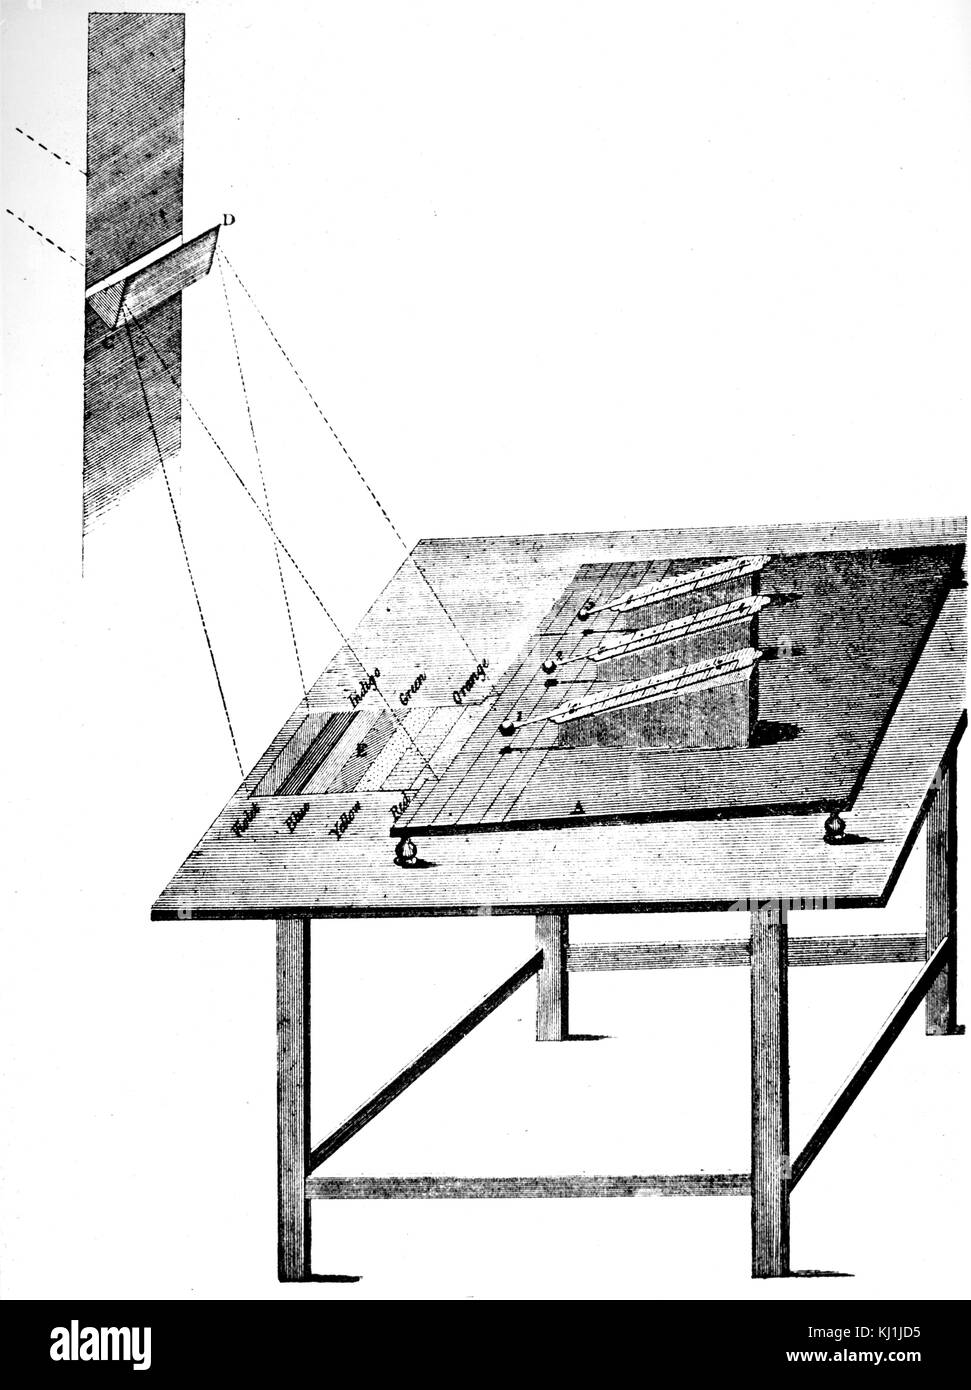 Gravur, ein Experiment, durchgeführt von William Herschel (1738-1822) ein britischer Astronom und Komponist, der die Heizung Auswirkungen von Strahlen liegen unter dem roten Ende des Spektrums (Infrarot) untersucht. Vom 19. Jahrhundert Stockfoto